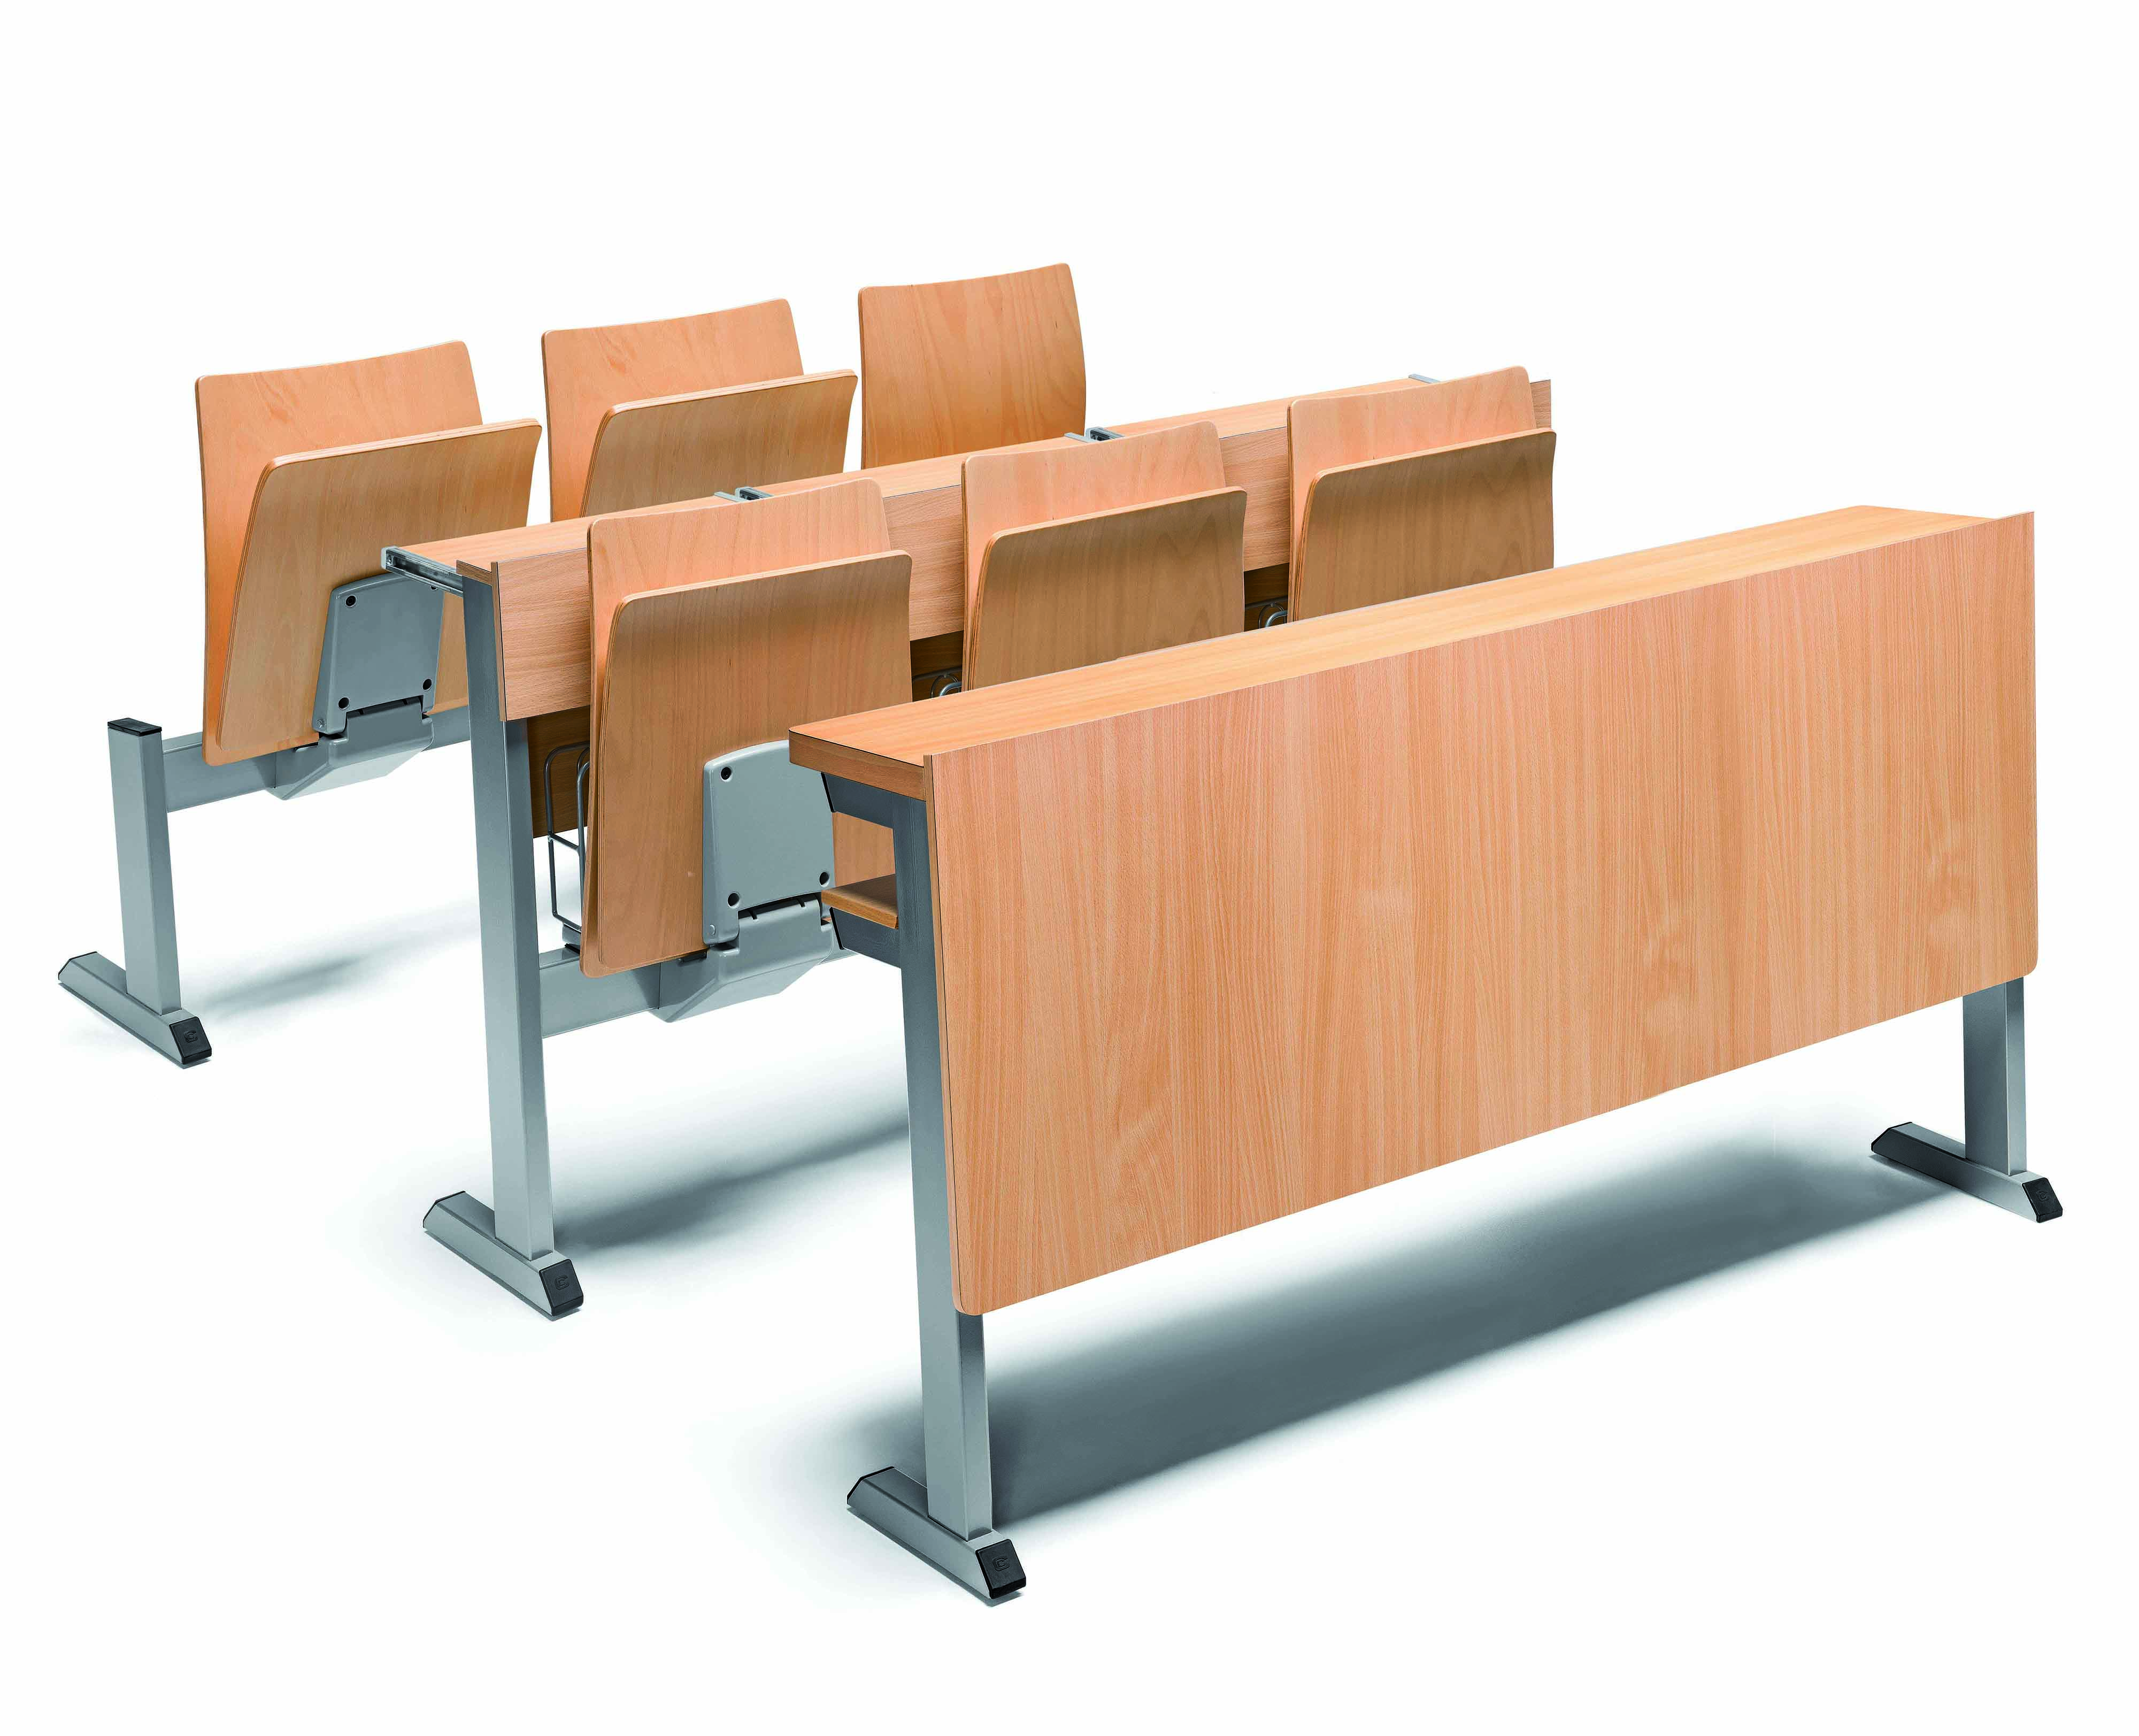 столы для аудиторий в учебных заведениях